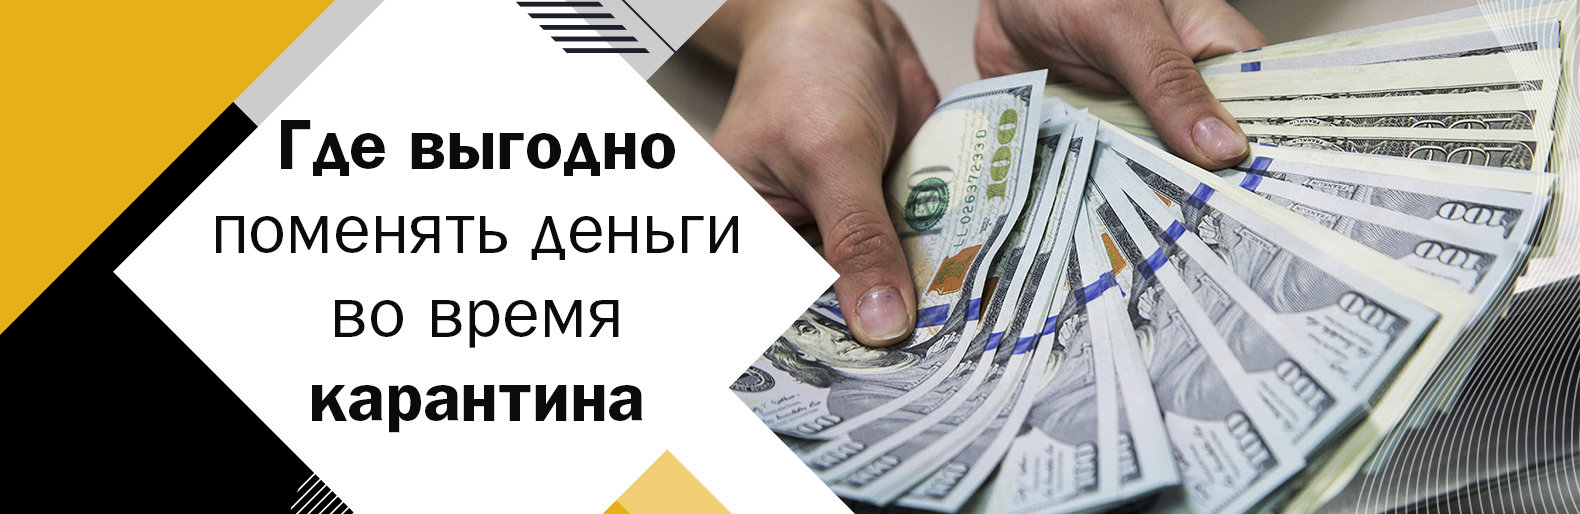 обмен валют выгодно белгород